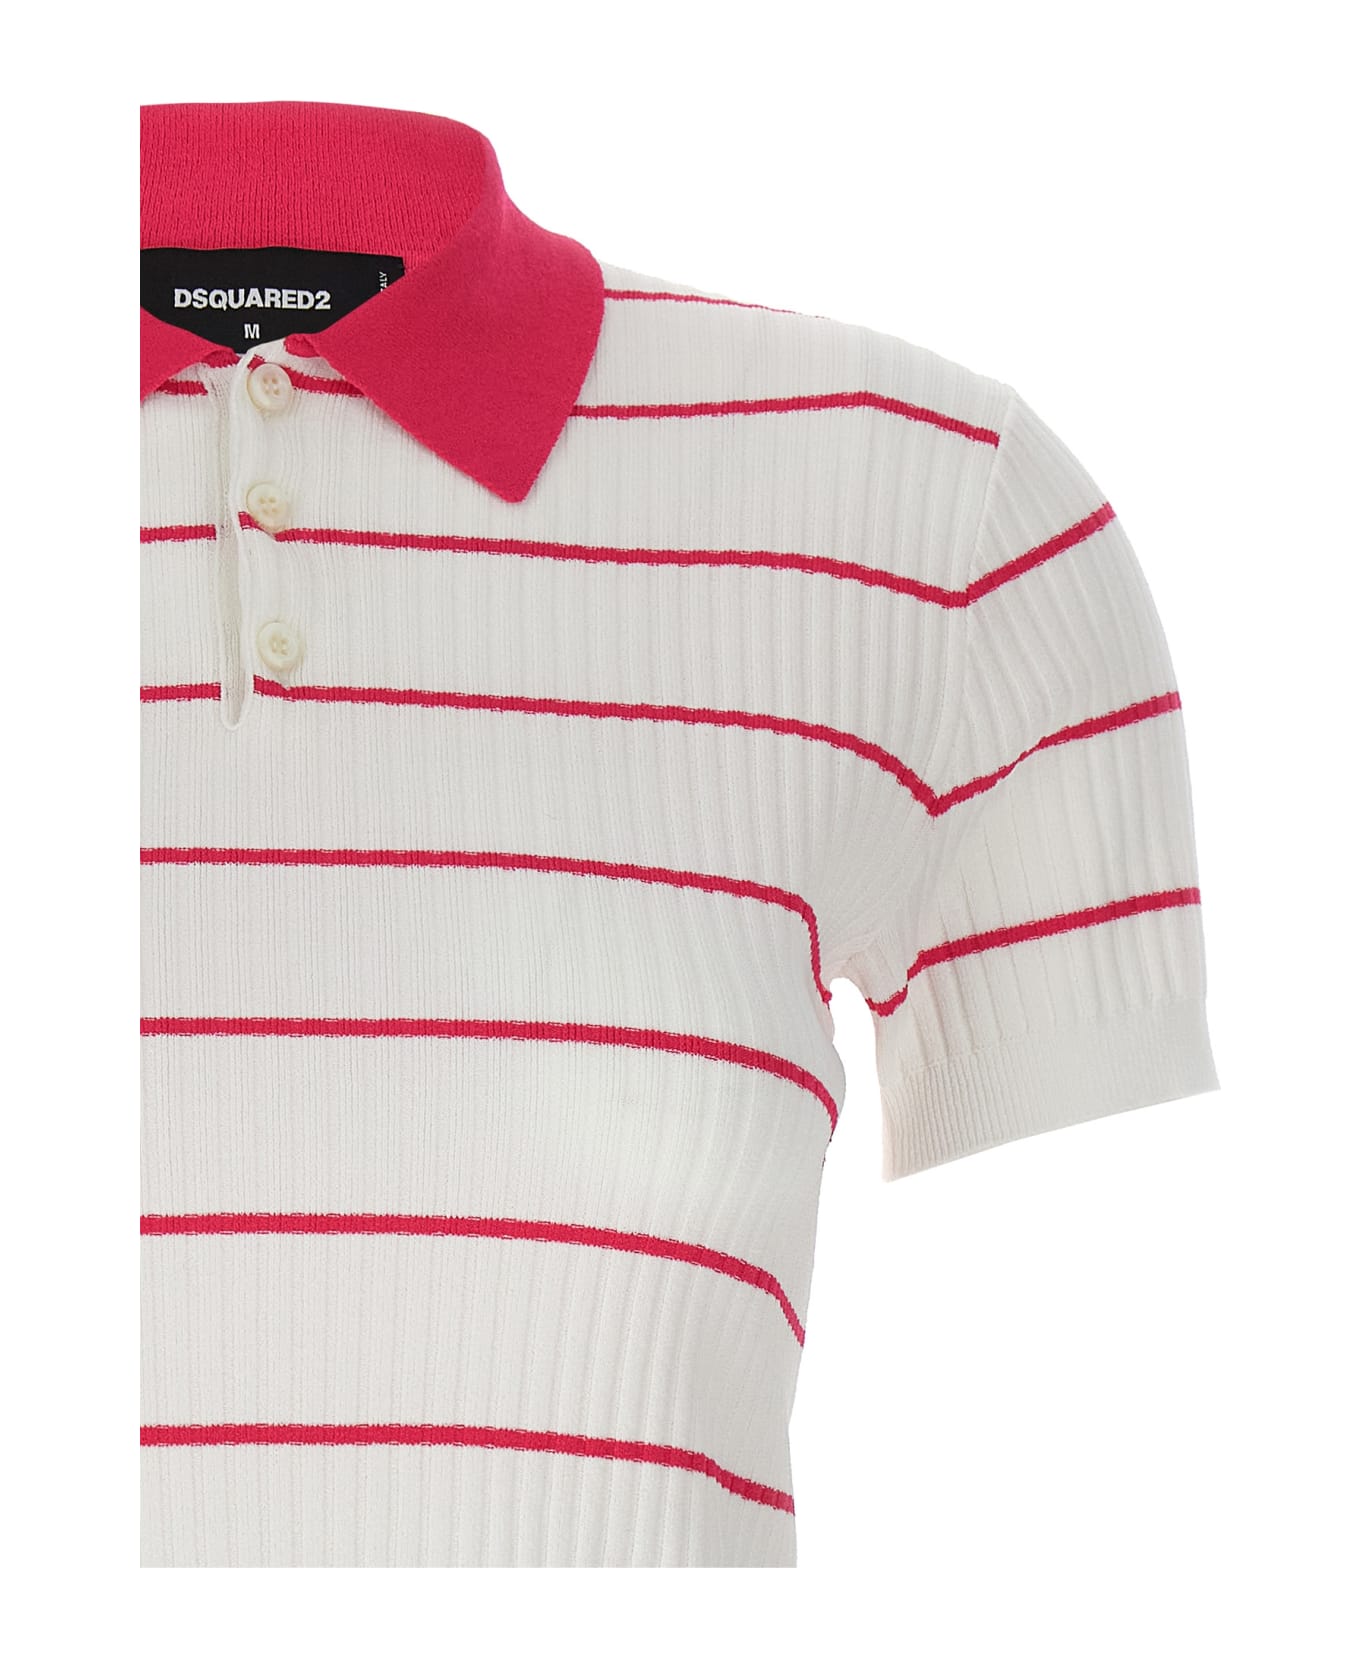 Dsquared2 'striped' Polo Shirt - Multicolor